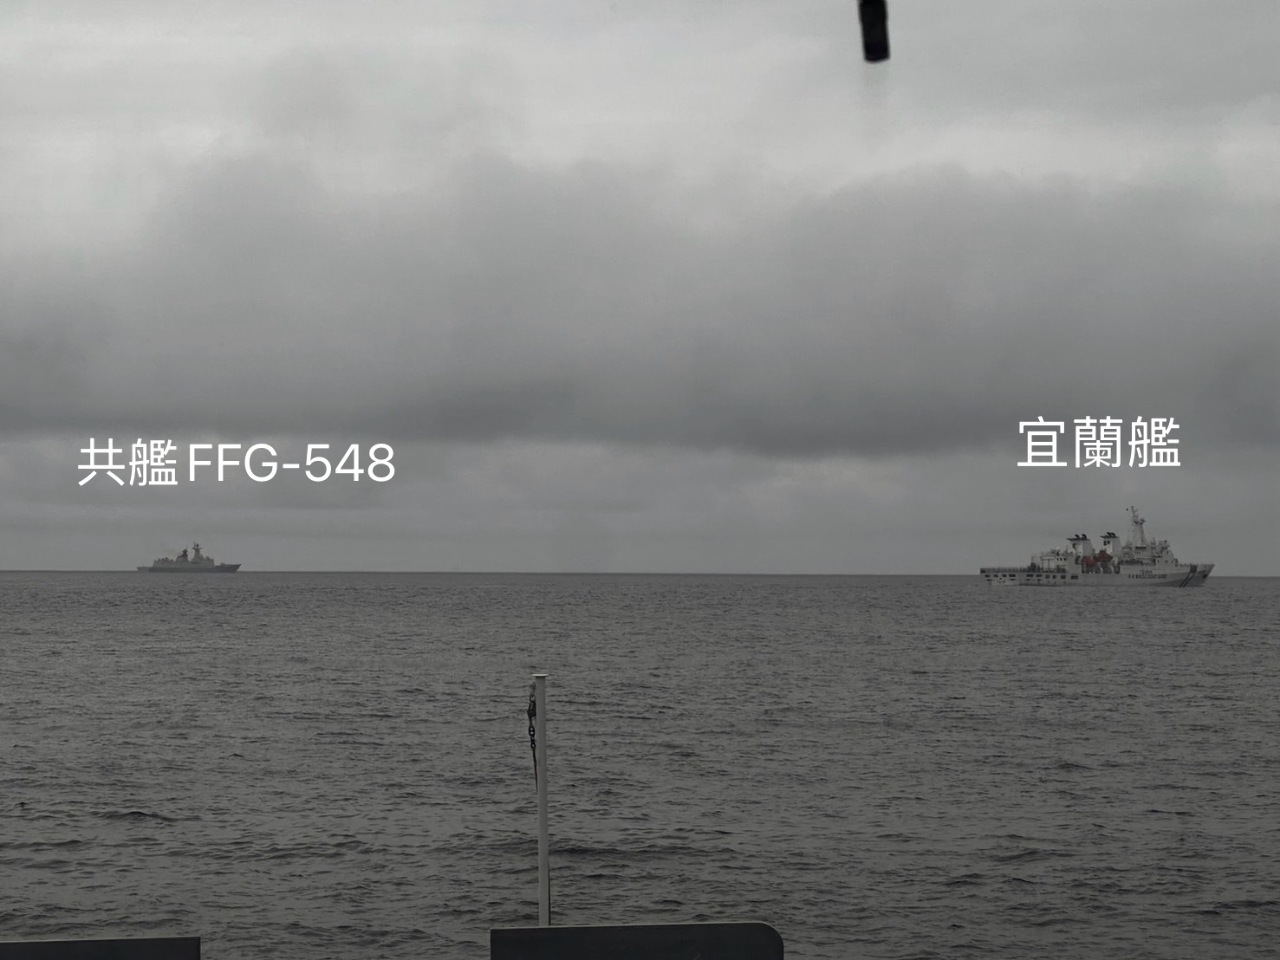 中共軍演船艦出沒彭佳嶼海域 宜蘭艦監控益陽號併航畫面曝光